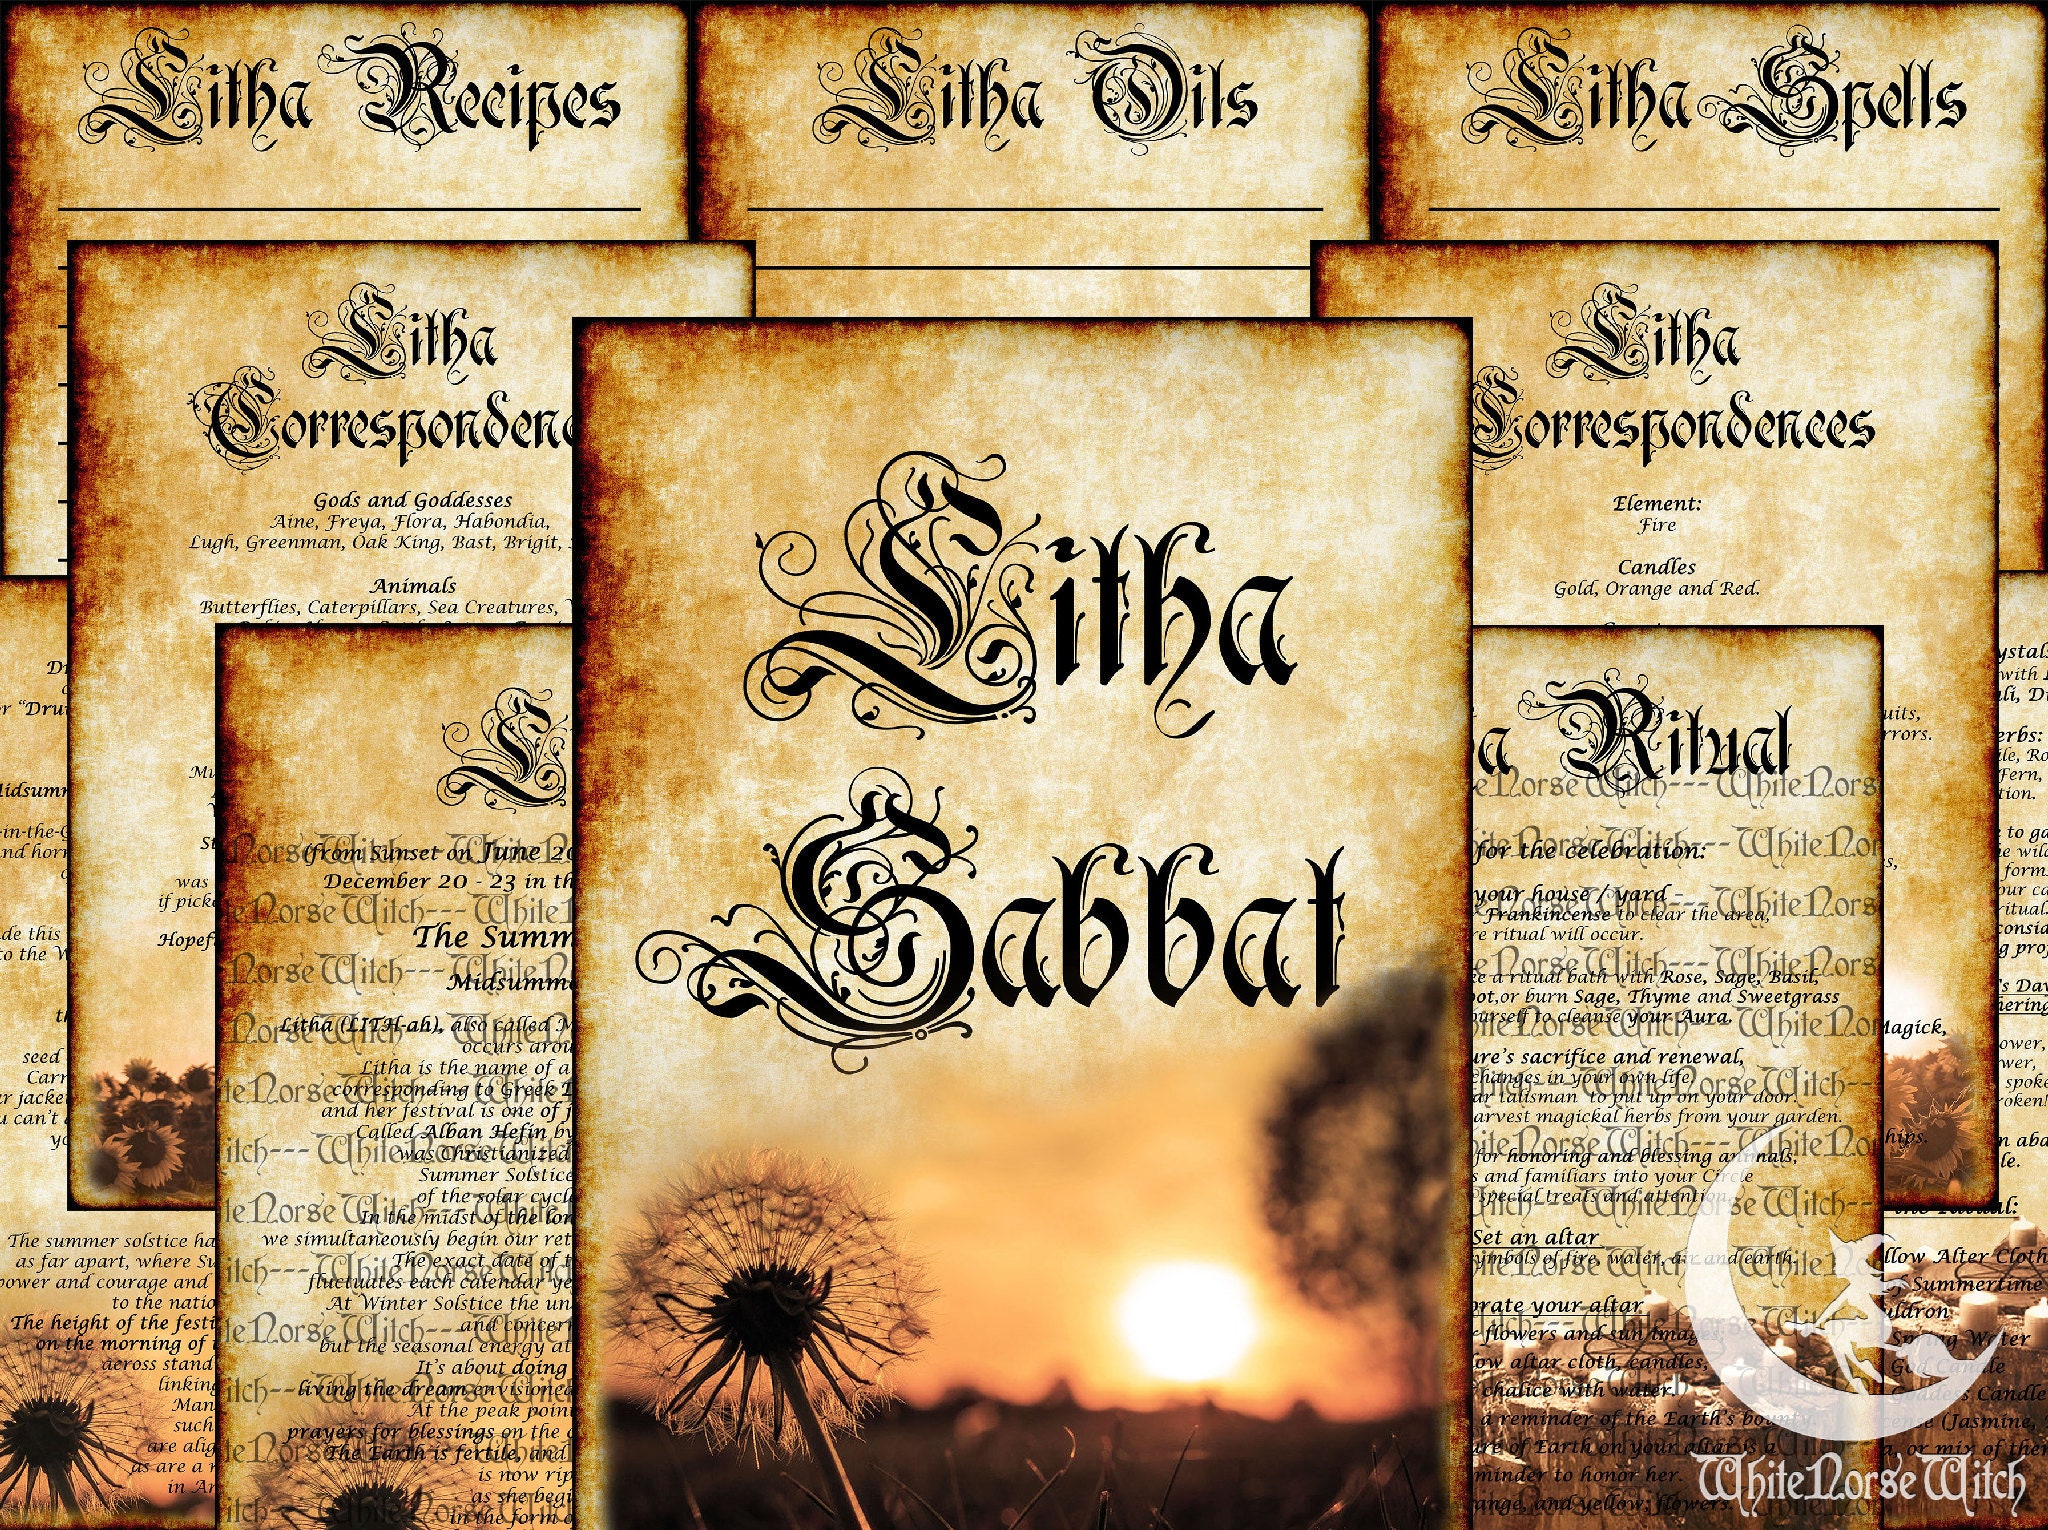 Plenarmøde foretrækkes oprindelse Litha Sabbat Pages Wheel of the Year Printable Summer Solstice - Etsy